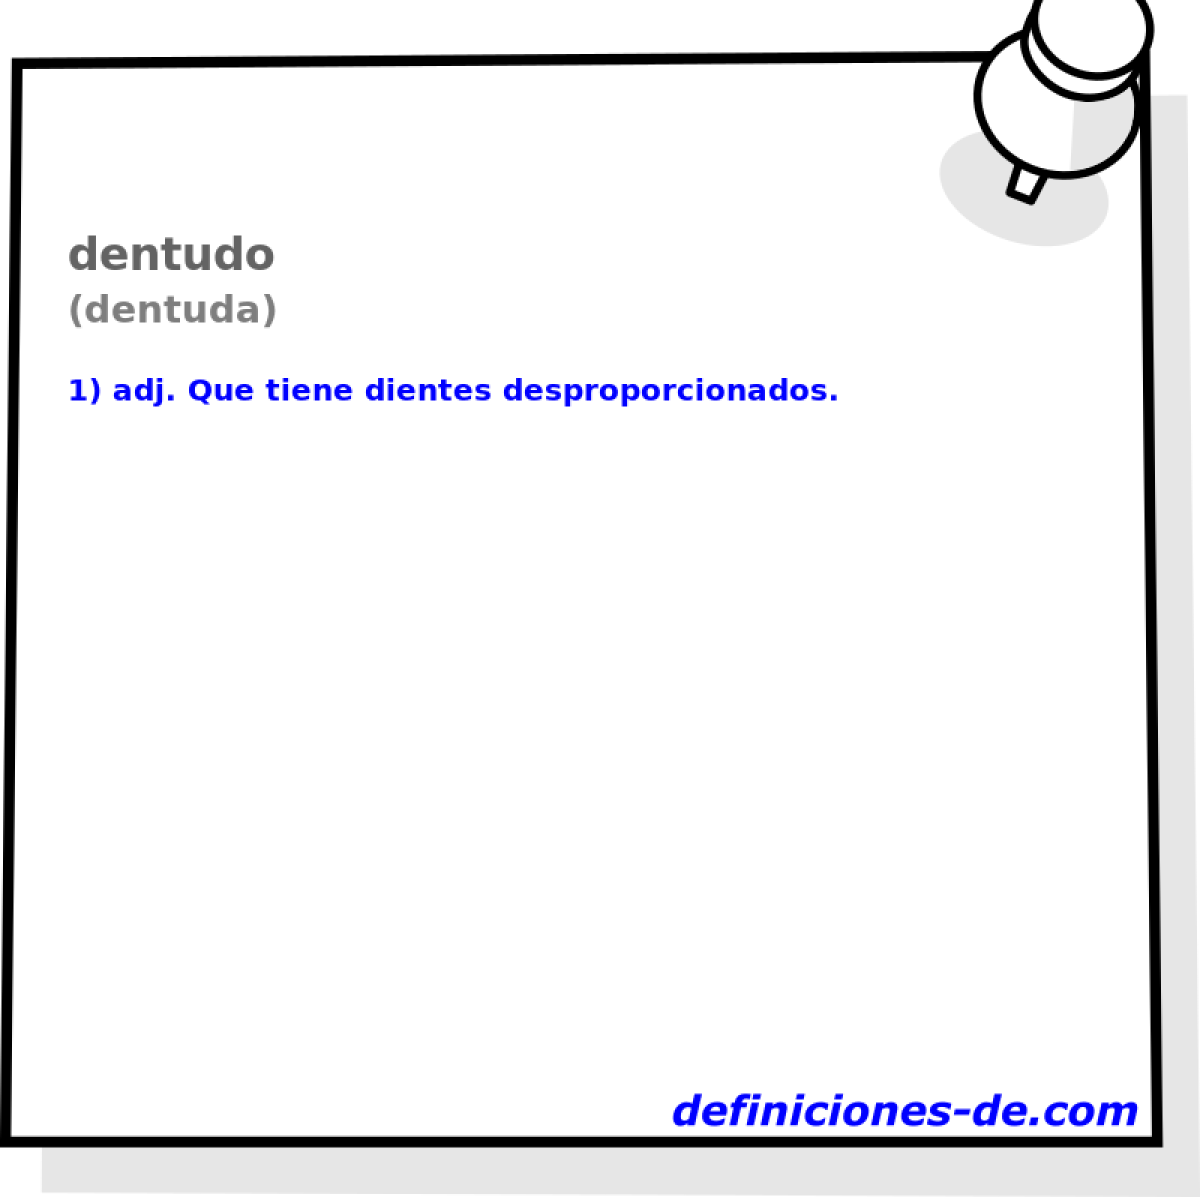 dentudo (dentuda)